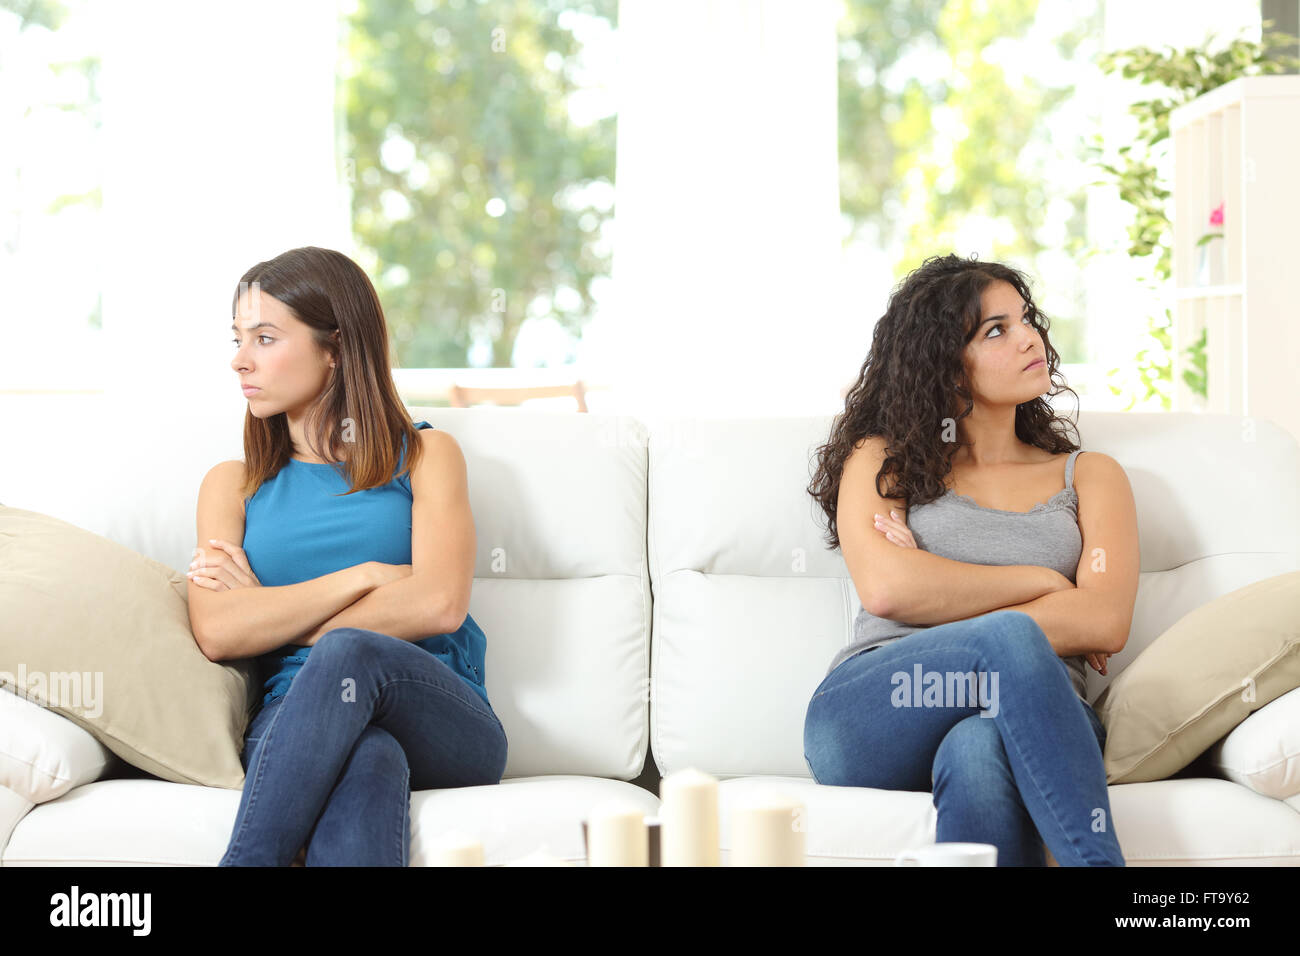 Zwei böse Freunde nach einem Streit auf einer Couch sitzend und mit Blick auf die andere Seite Stockfoto